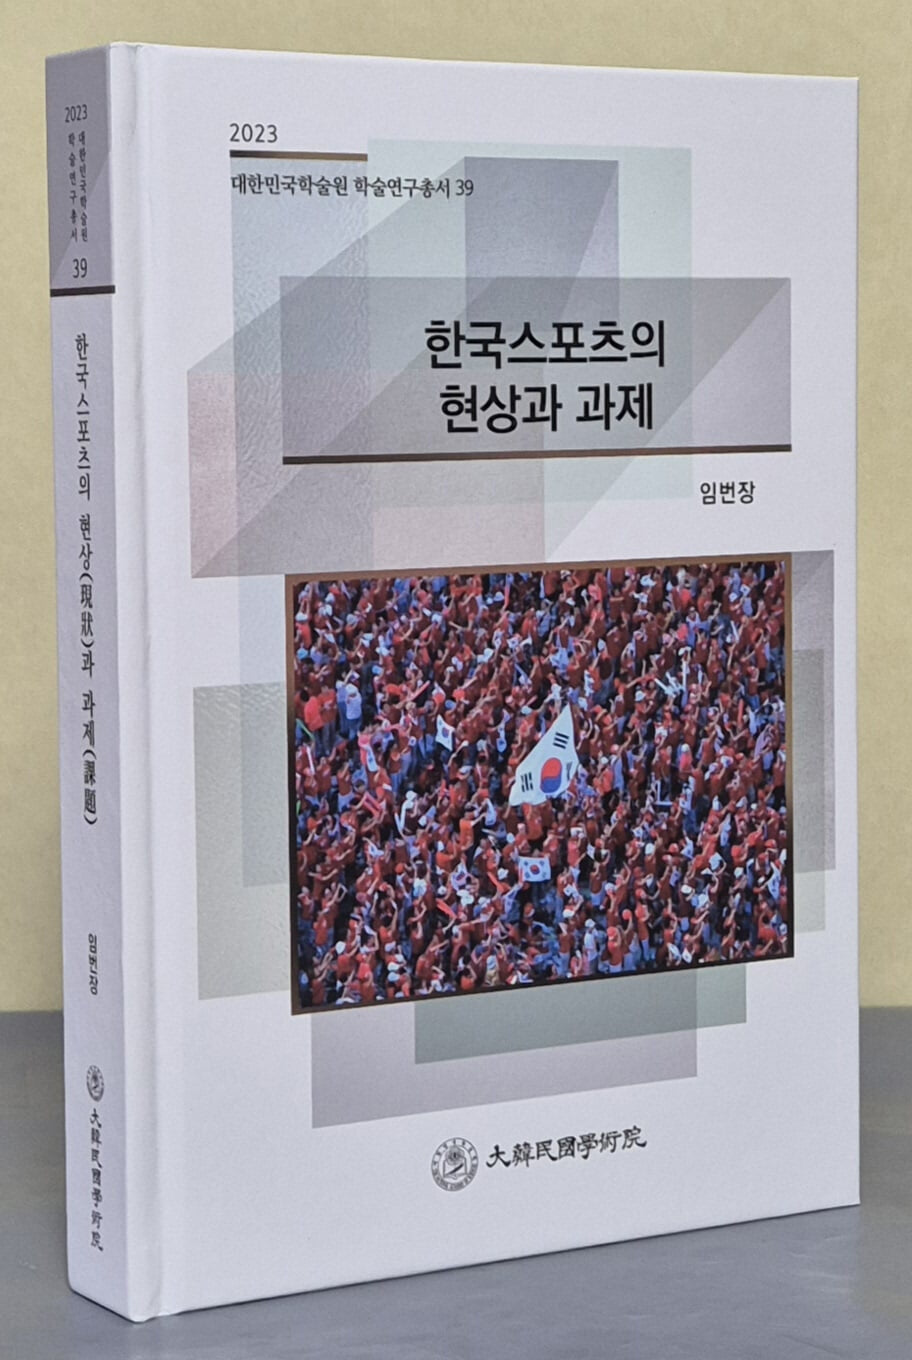 한국스포츠의 현상과 과제 (2023 대한민국학술원 학술연구총서 39)